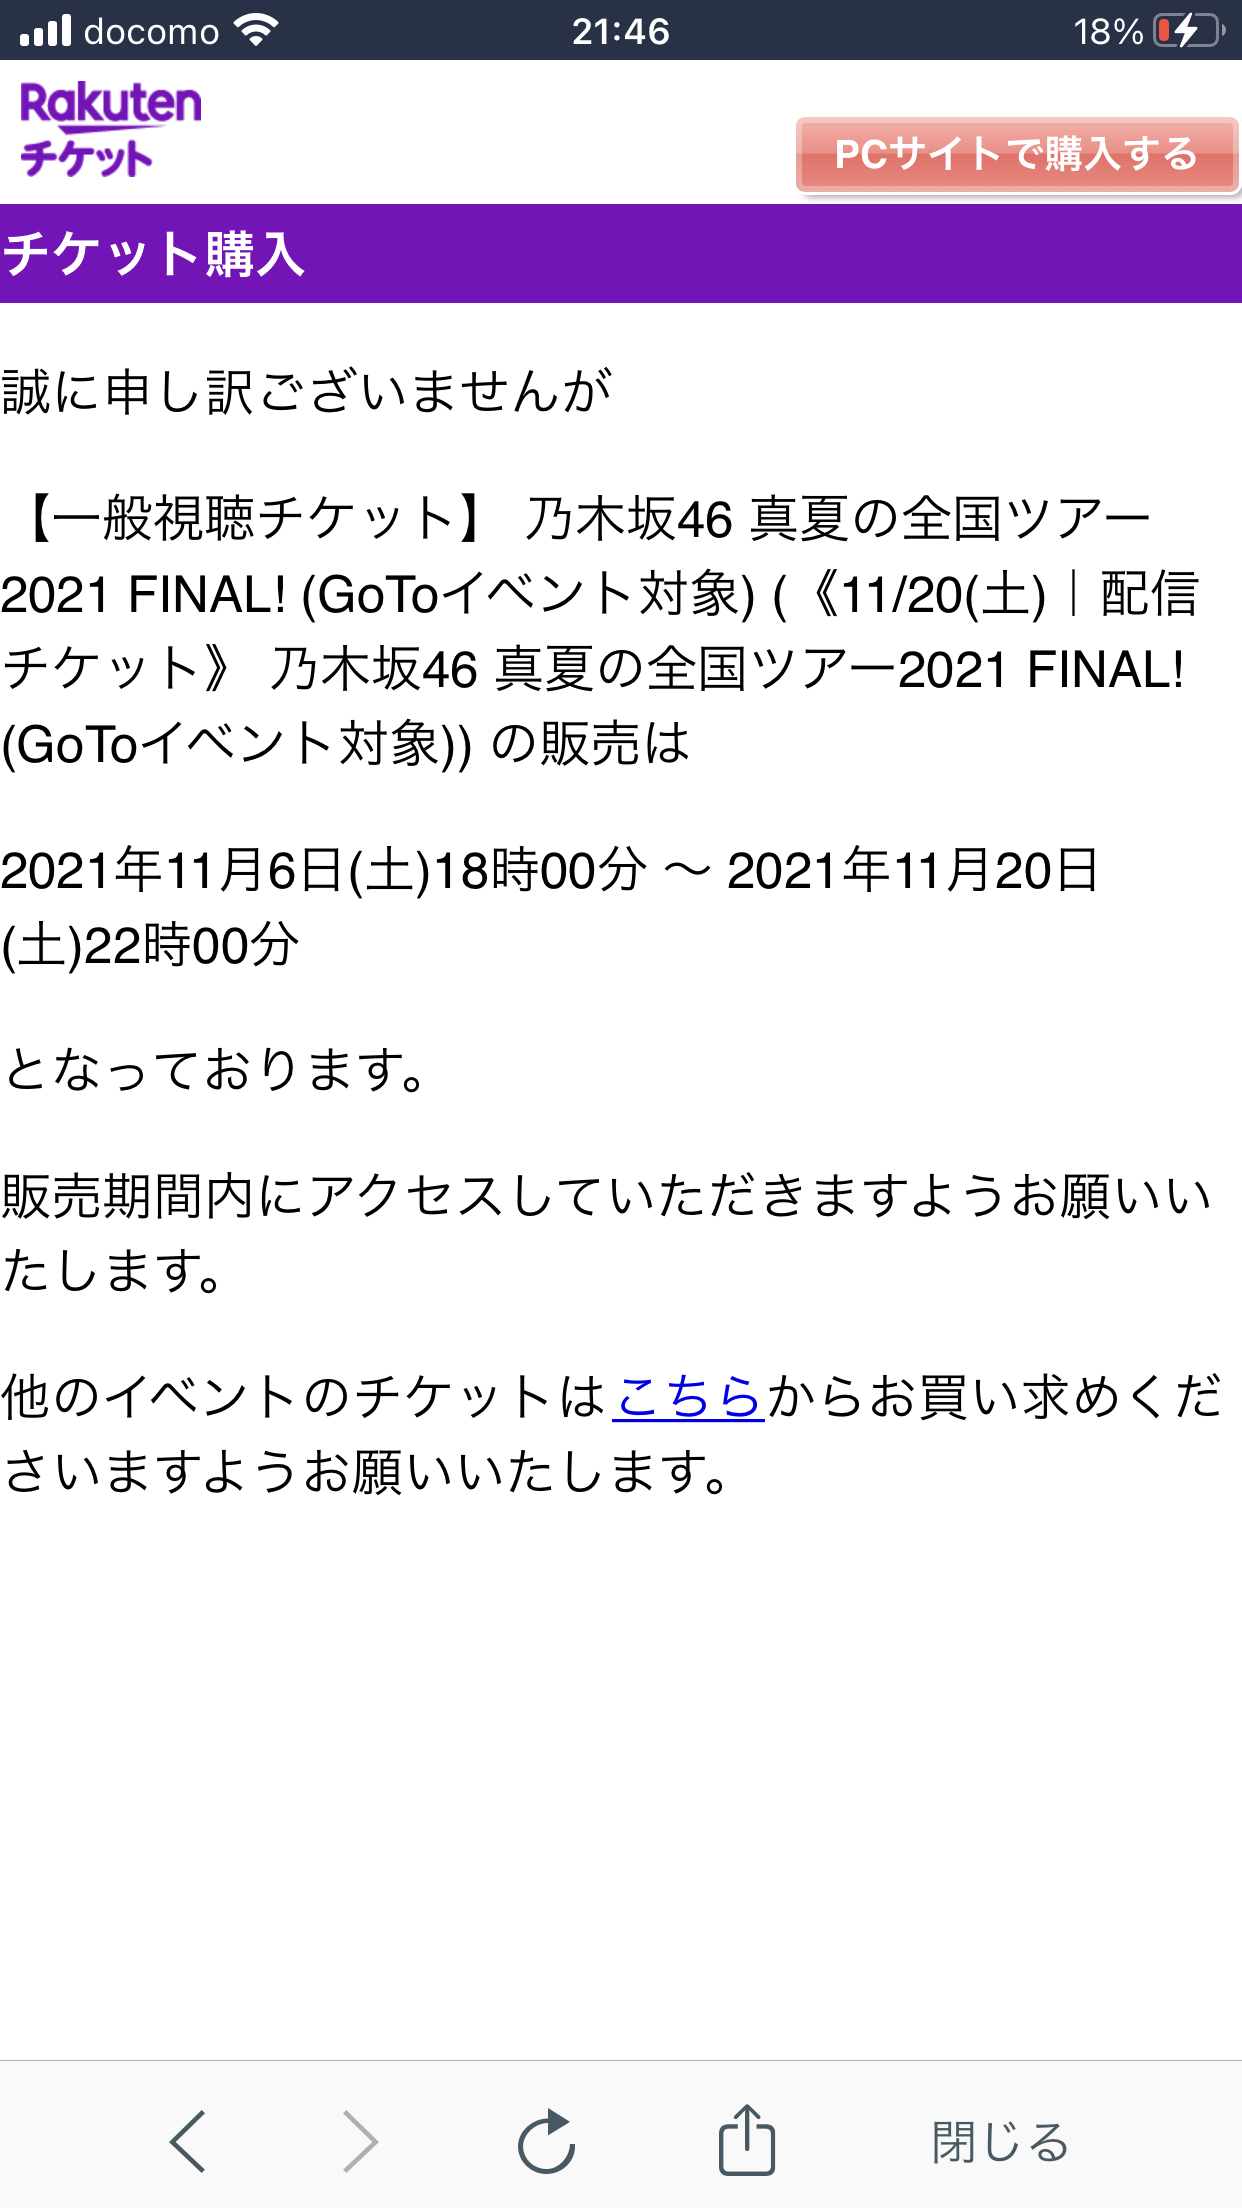 乃木坂46真夏の全国ツアー2021FINAL!